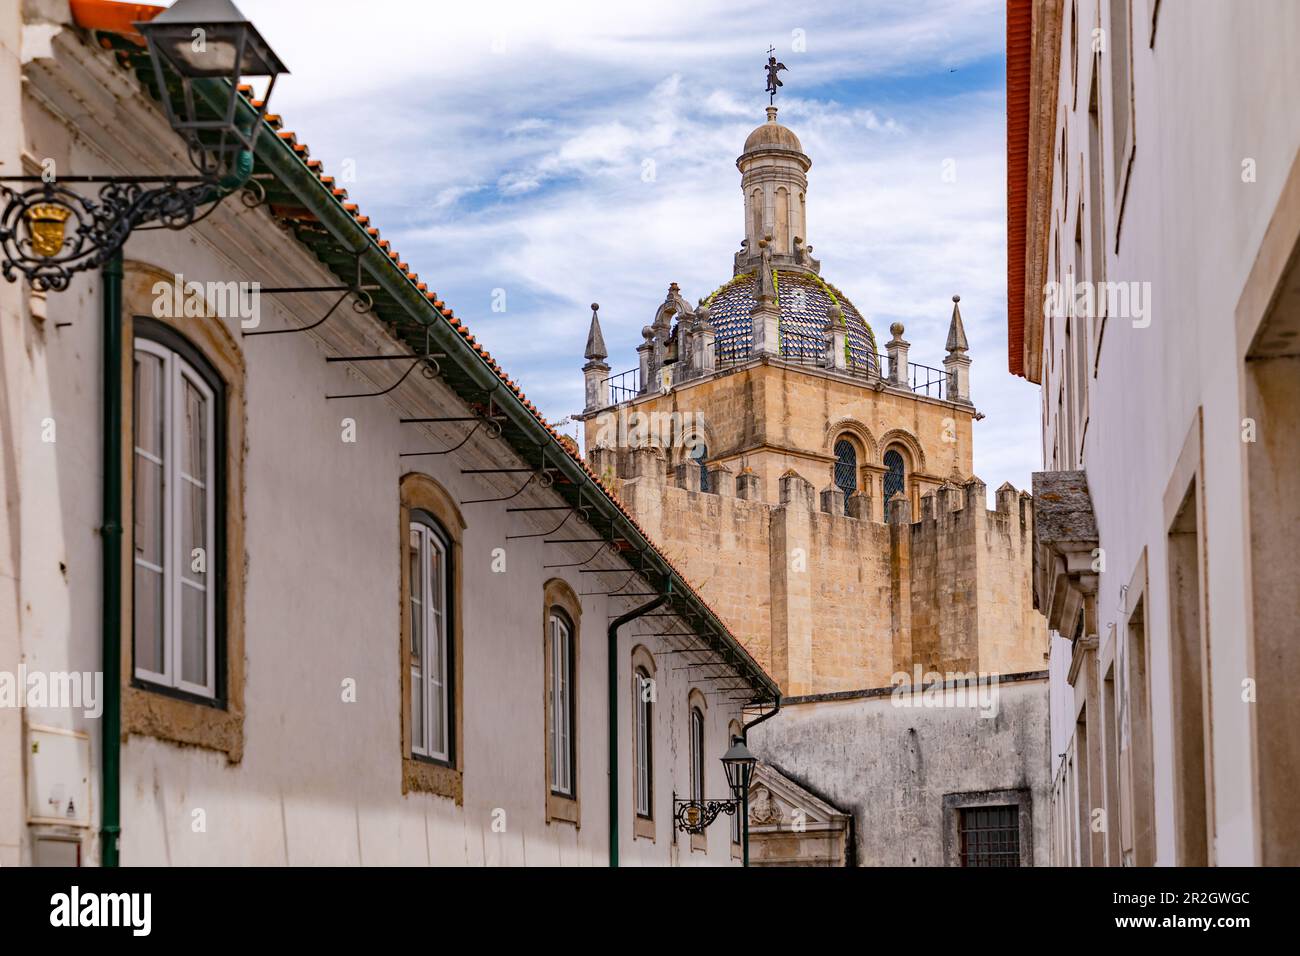 Le dôme distinctif de passage de la cathédrale se Velha dans la capitale historique de Coimbra, Portugal Banque D'Images